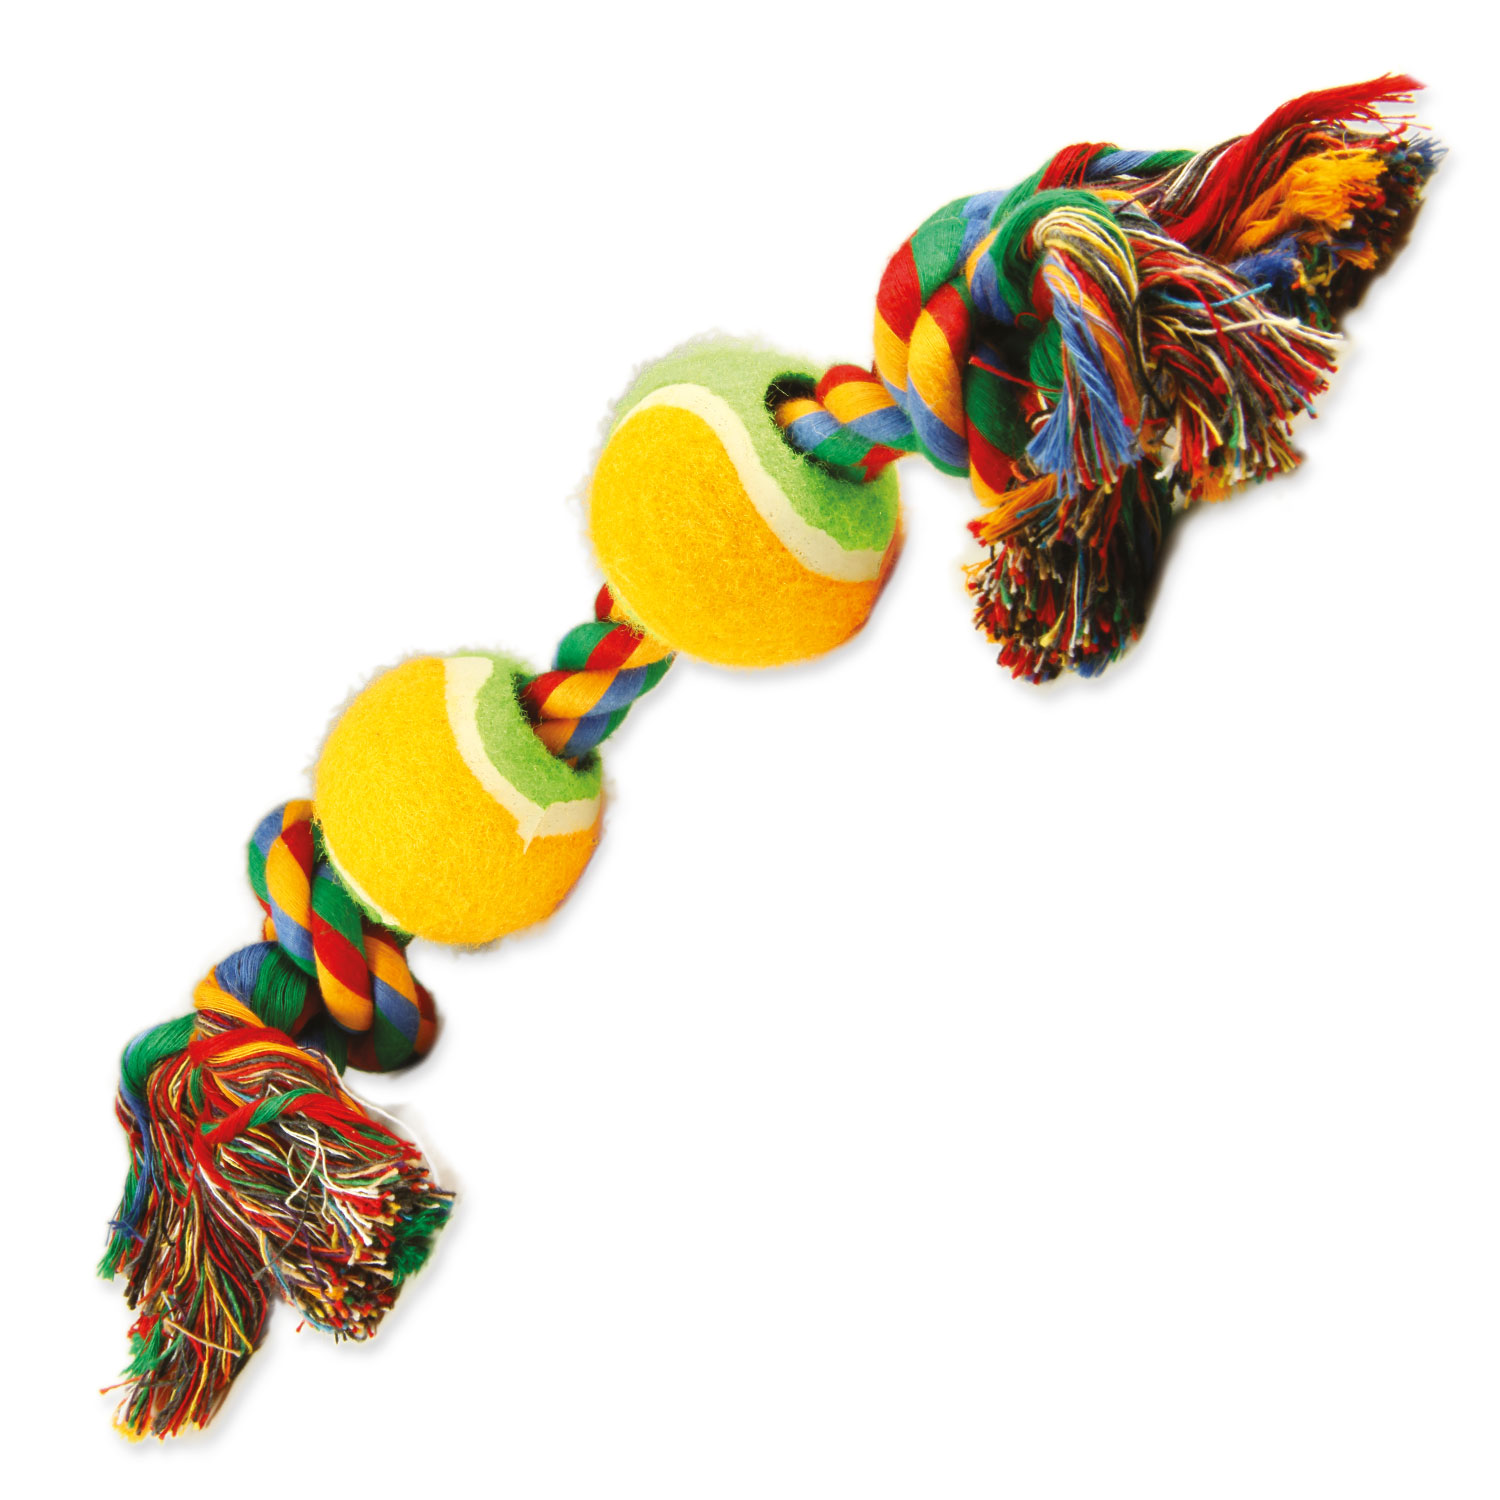 Hračka DOG FANTASY barevná 2 knoty + 2 tenisáky 35 cm, 1 ks